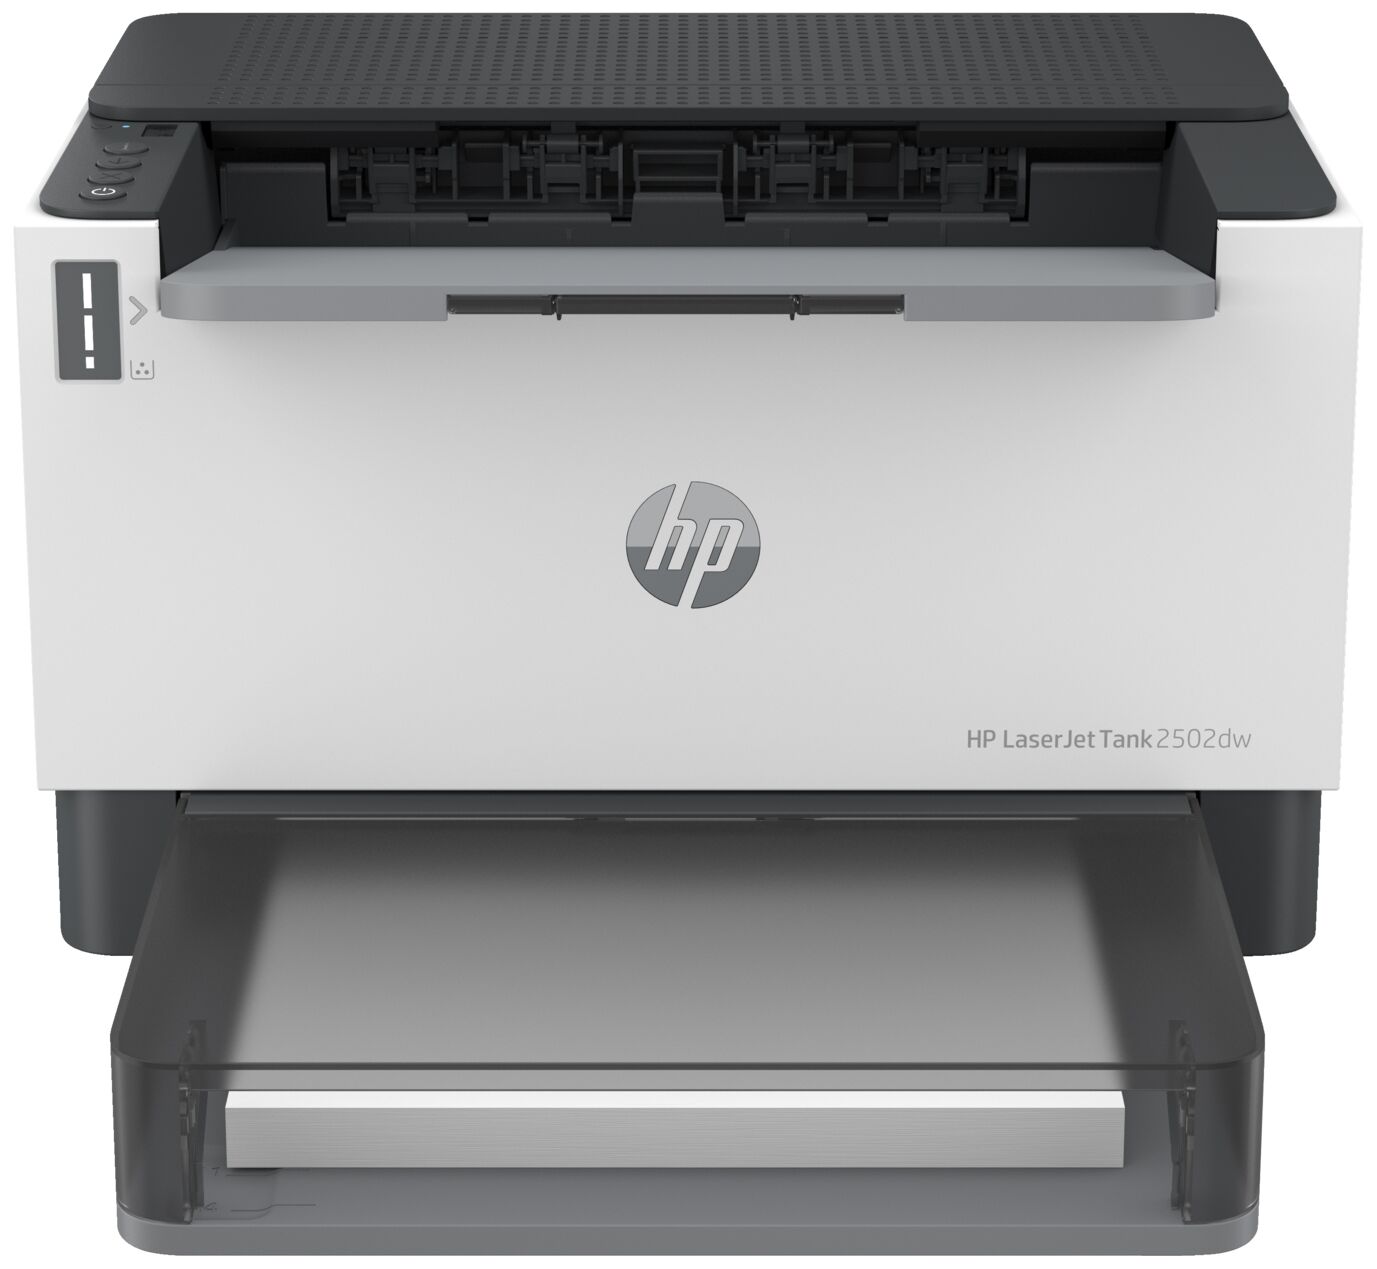 Принтер HP HP LaserJet Tank 2502dw 2R3E3A/A4 черно-белый/печать Лазерный 600x600dpi 22стр.мин/Wi-Fi Bluetooth Сетевой ин